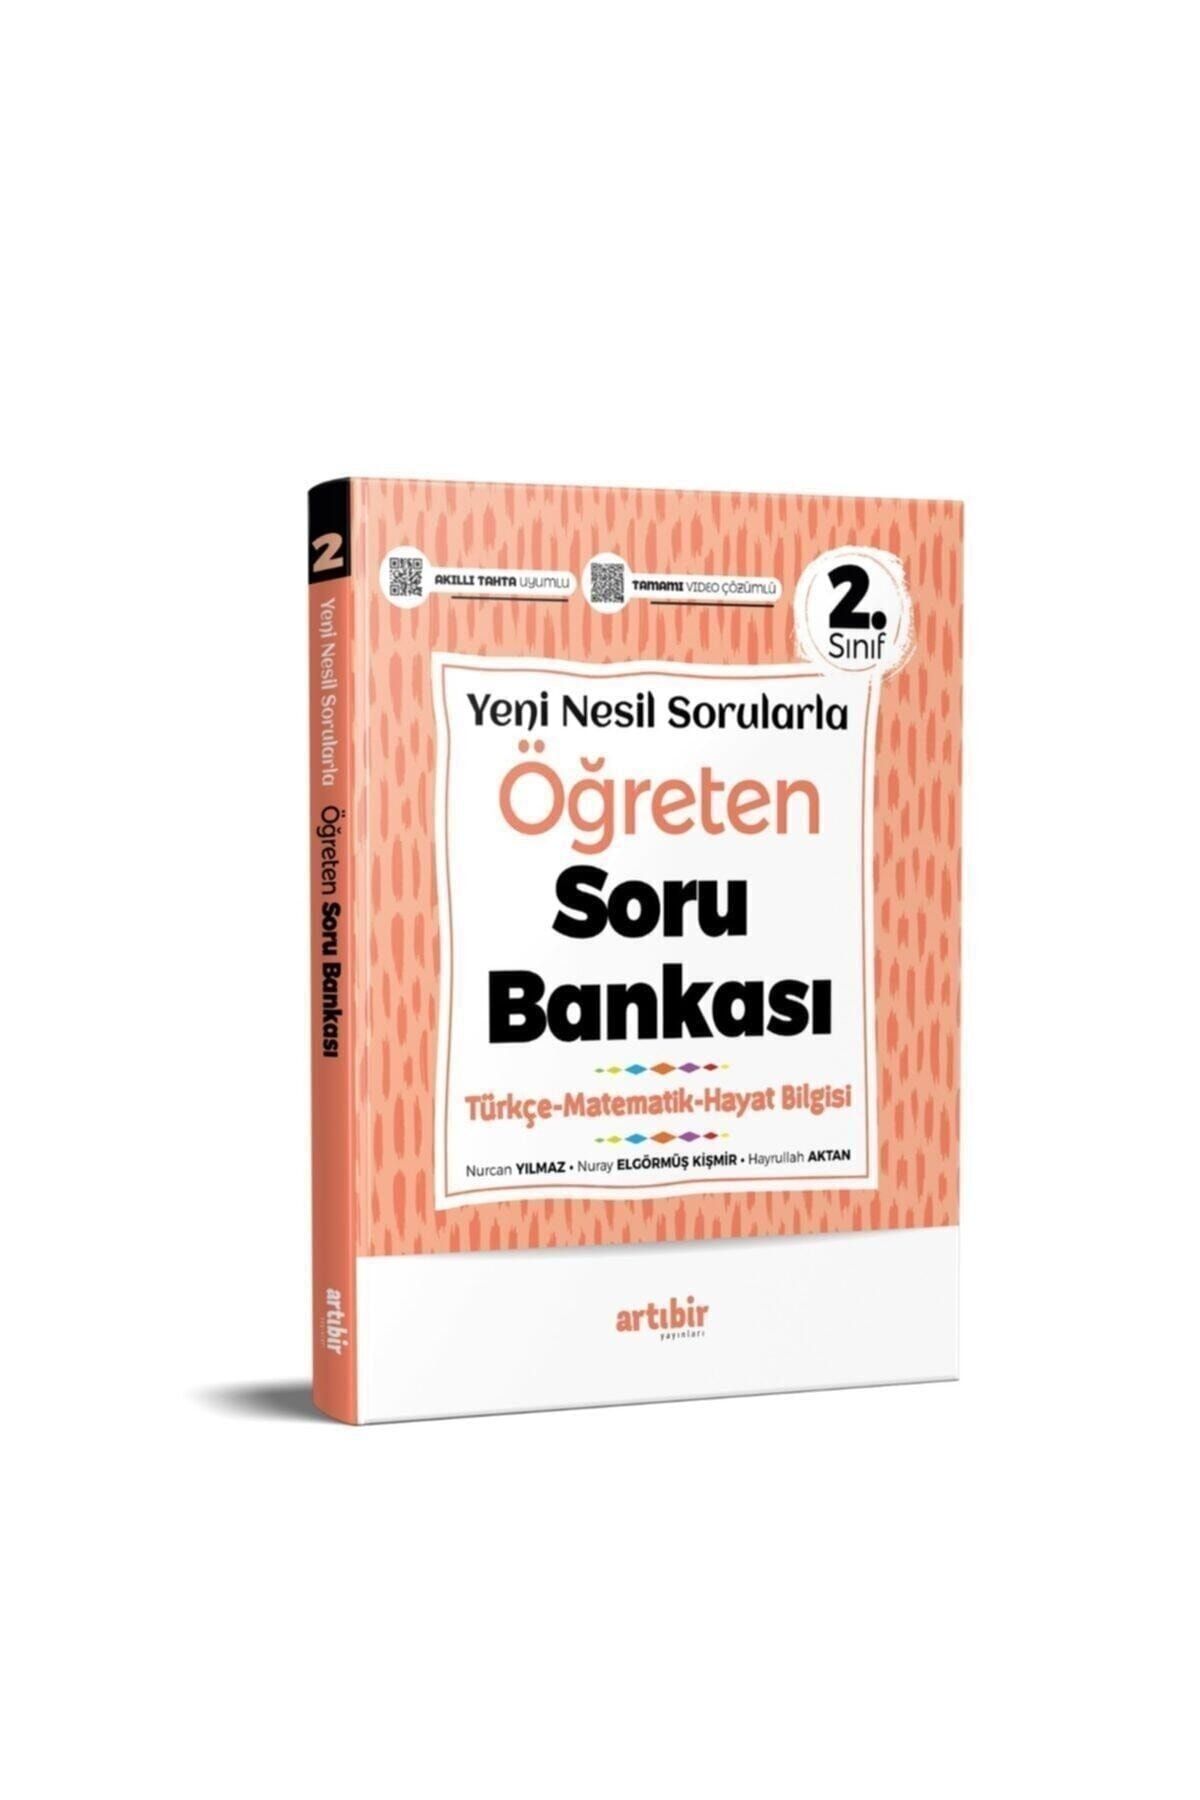 Artıbir Yayınları Yeni Nesil Sorularla Öğreten Soru Bankası 2.sınıf